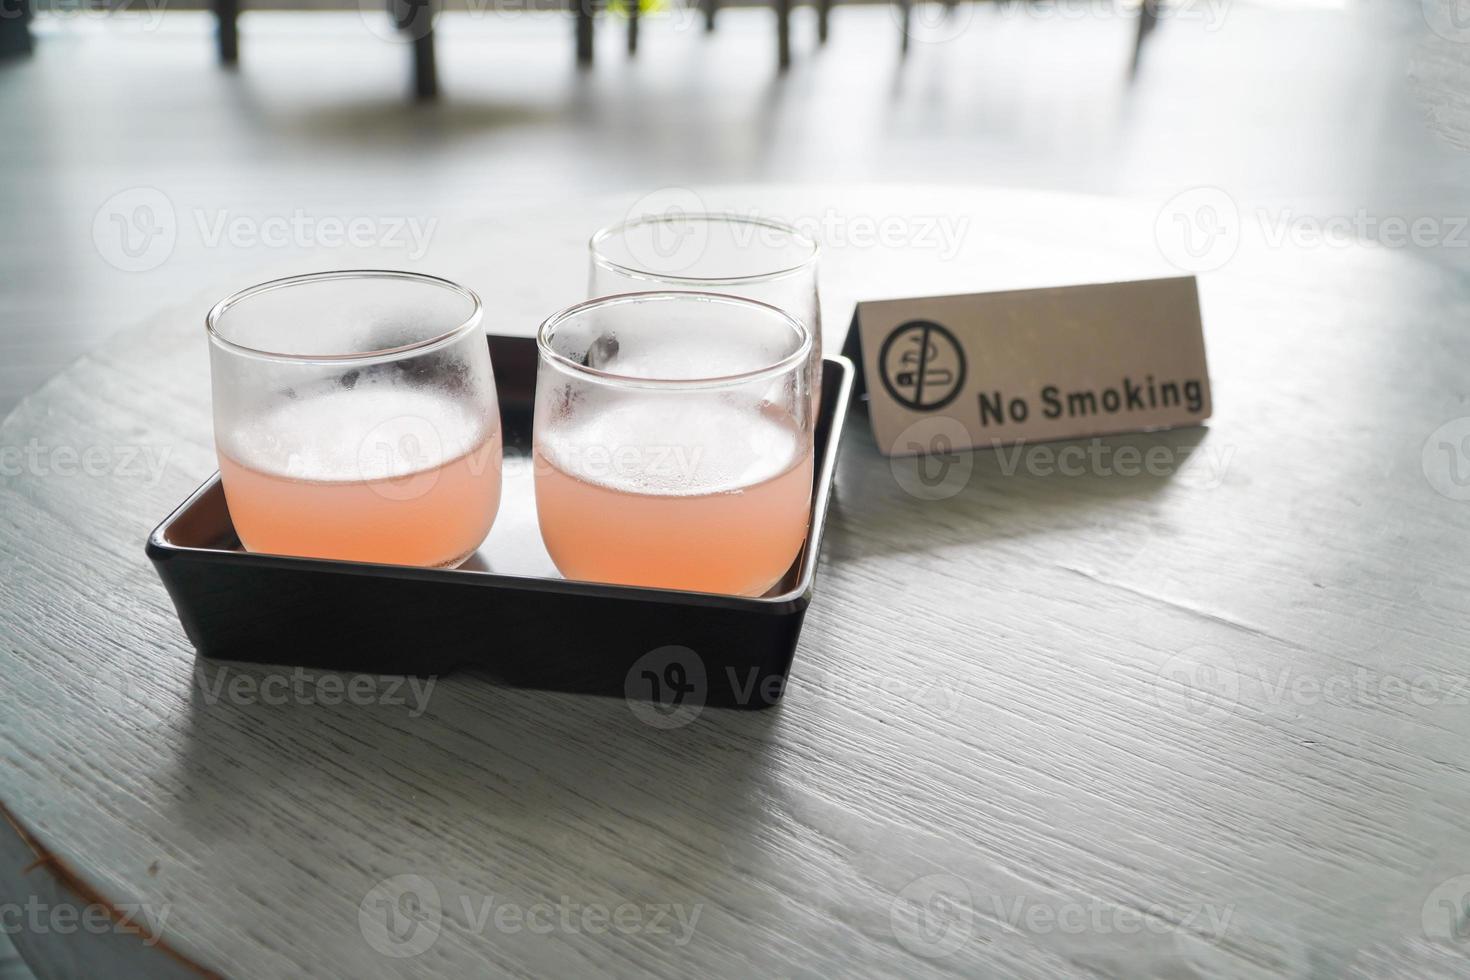 litchi blandad med persikojuice i glas på träbord uppfriskande drink på sommaren, välkomstdrink foto